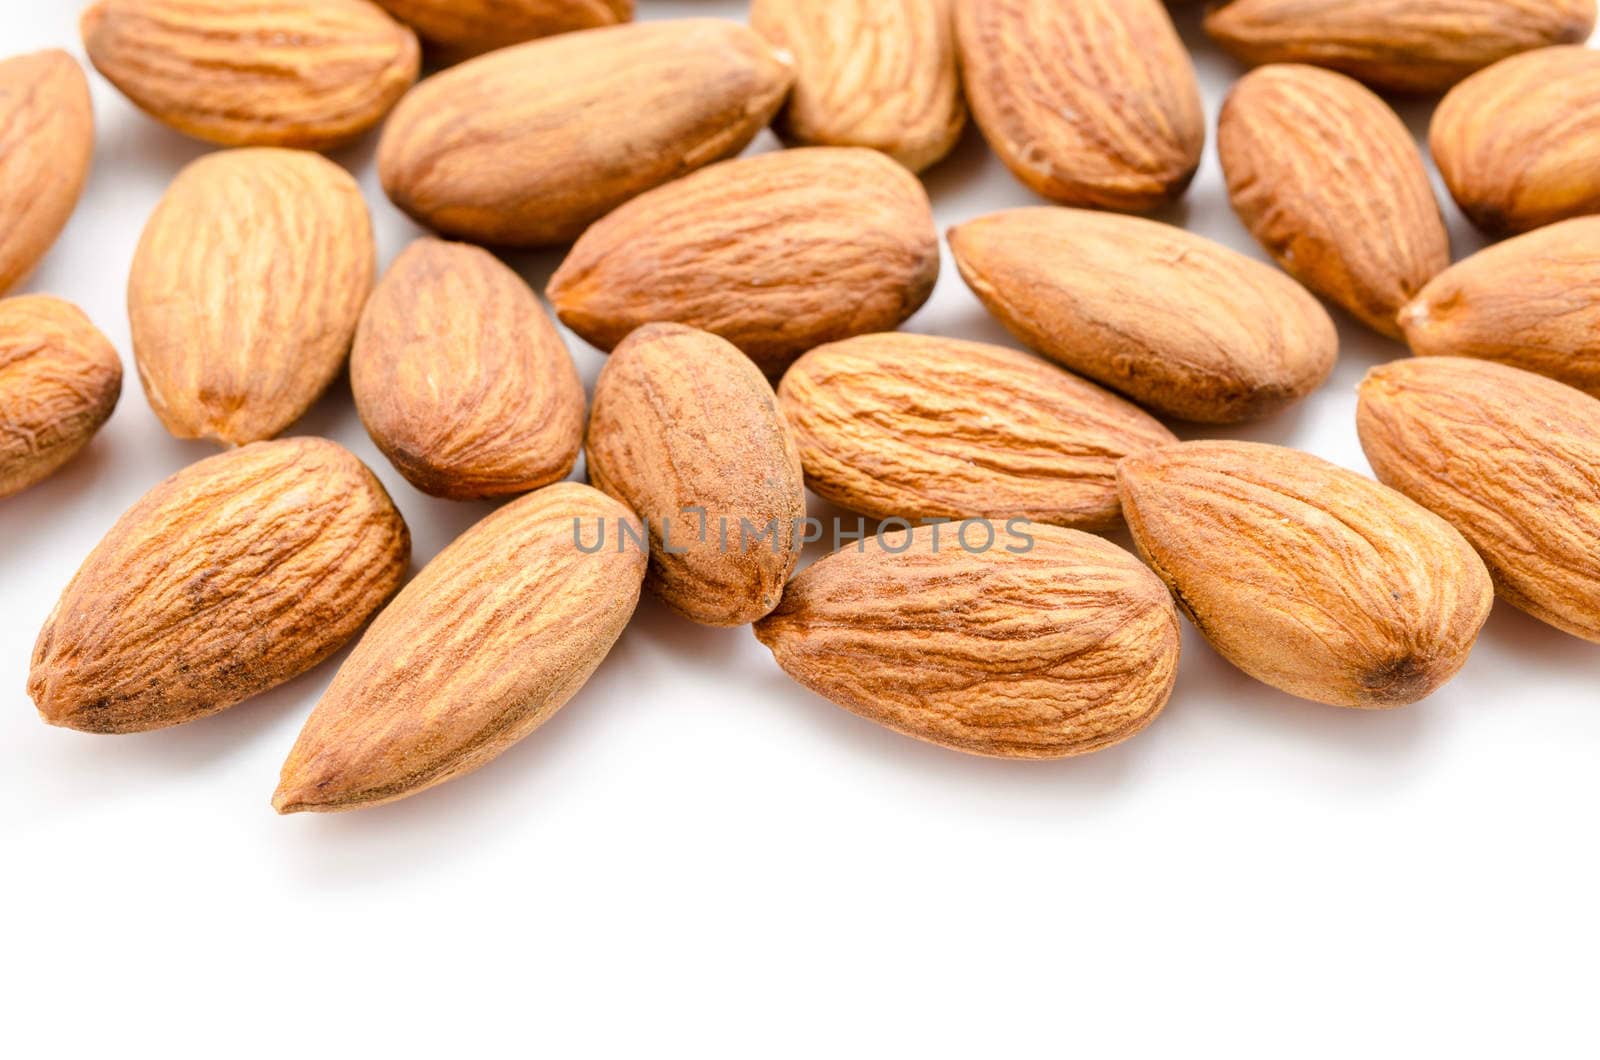 Almonds. by Gamjai